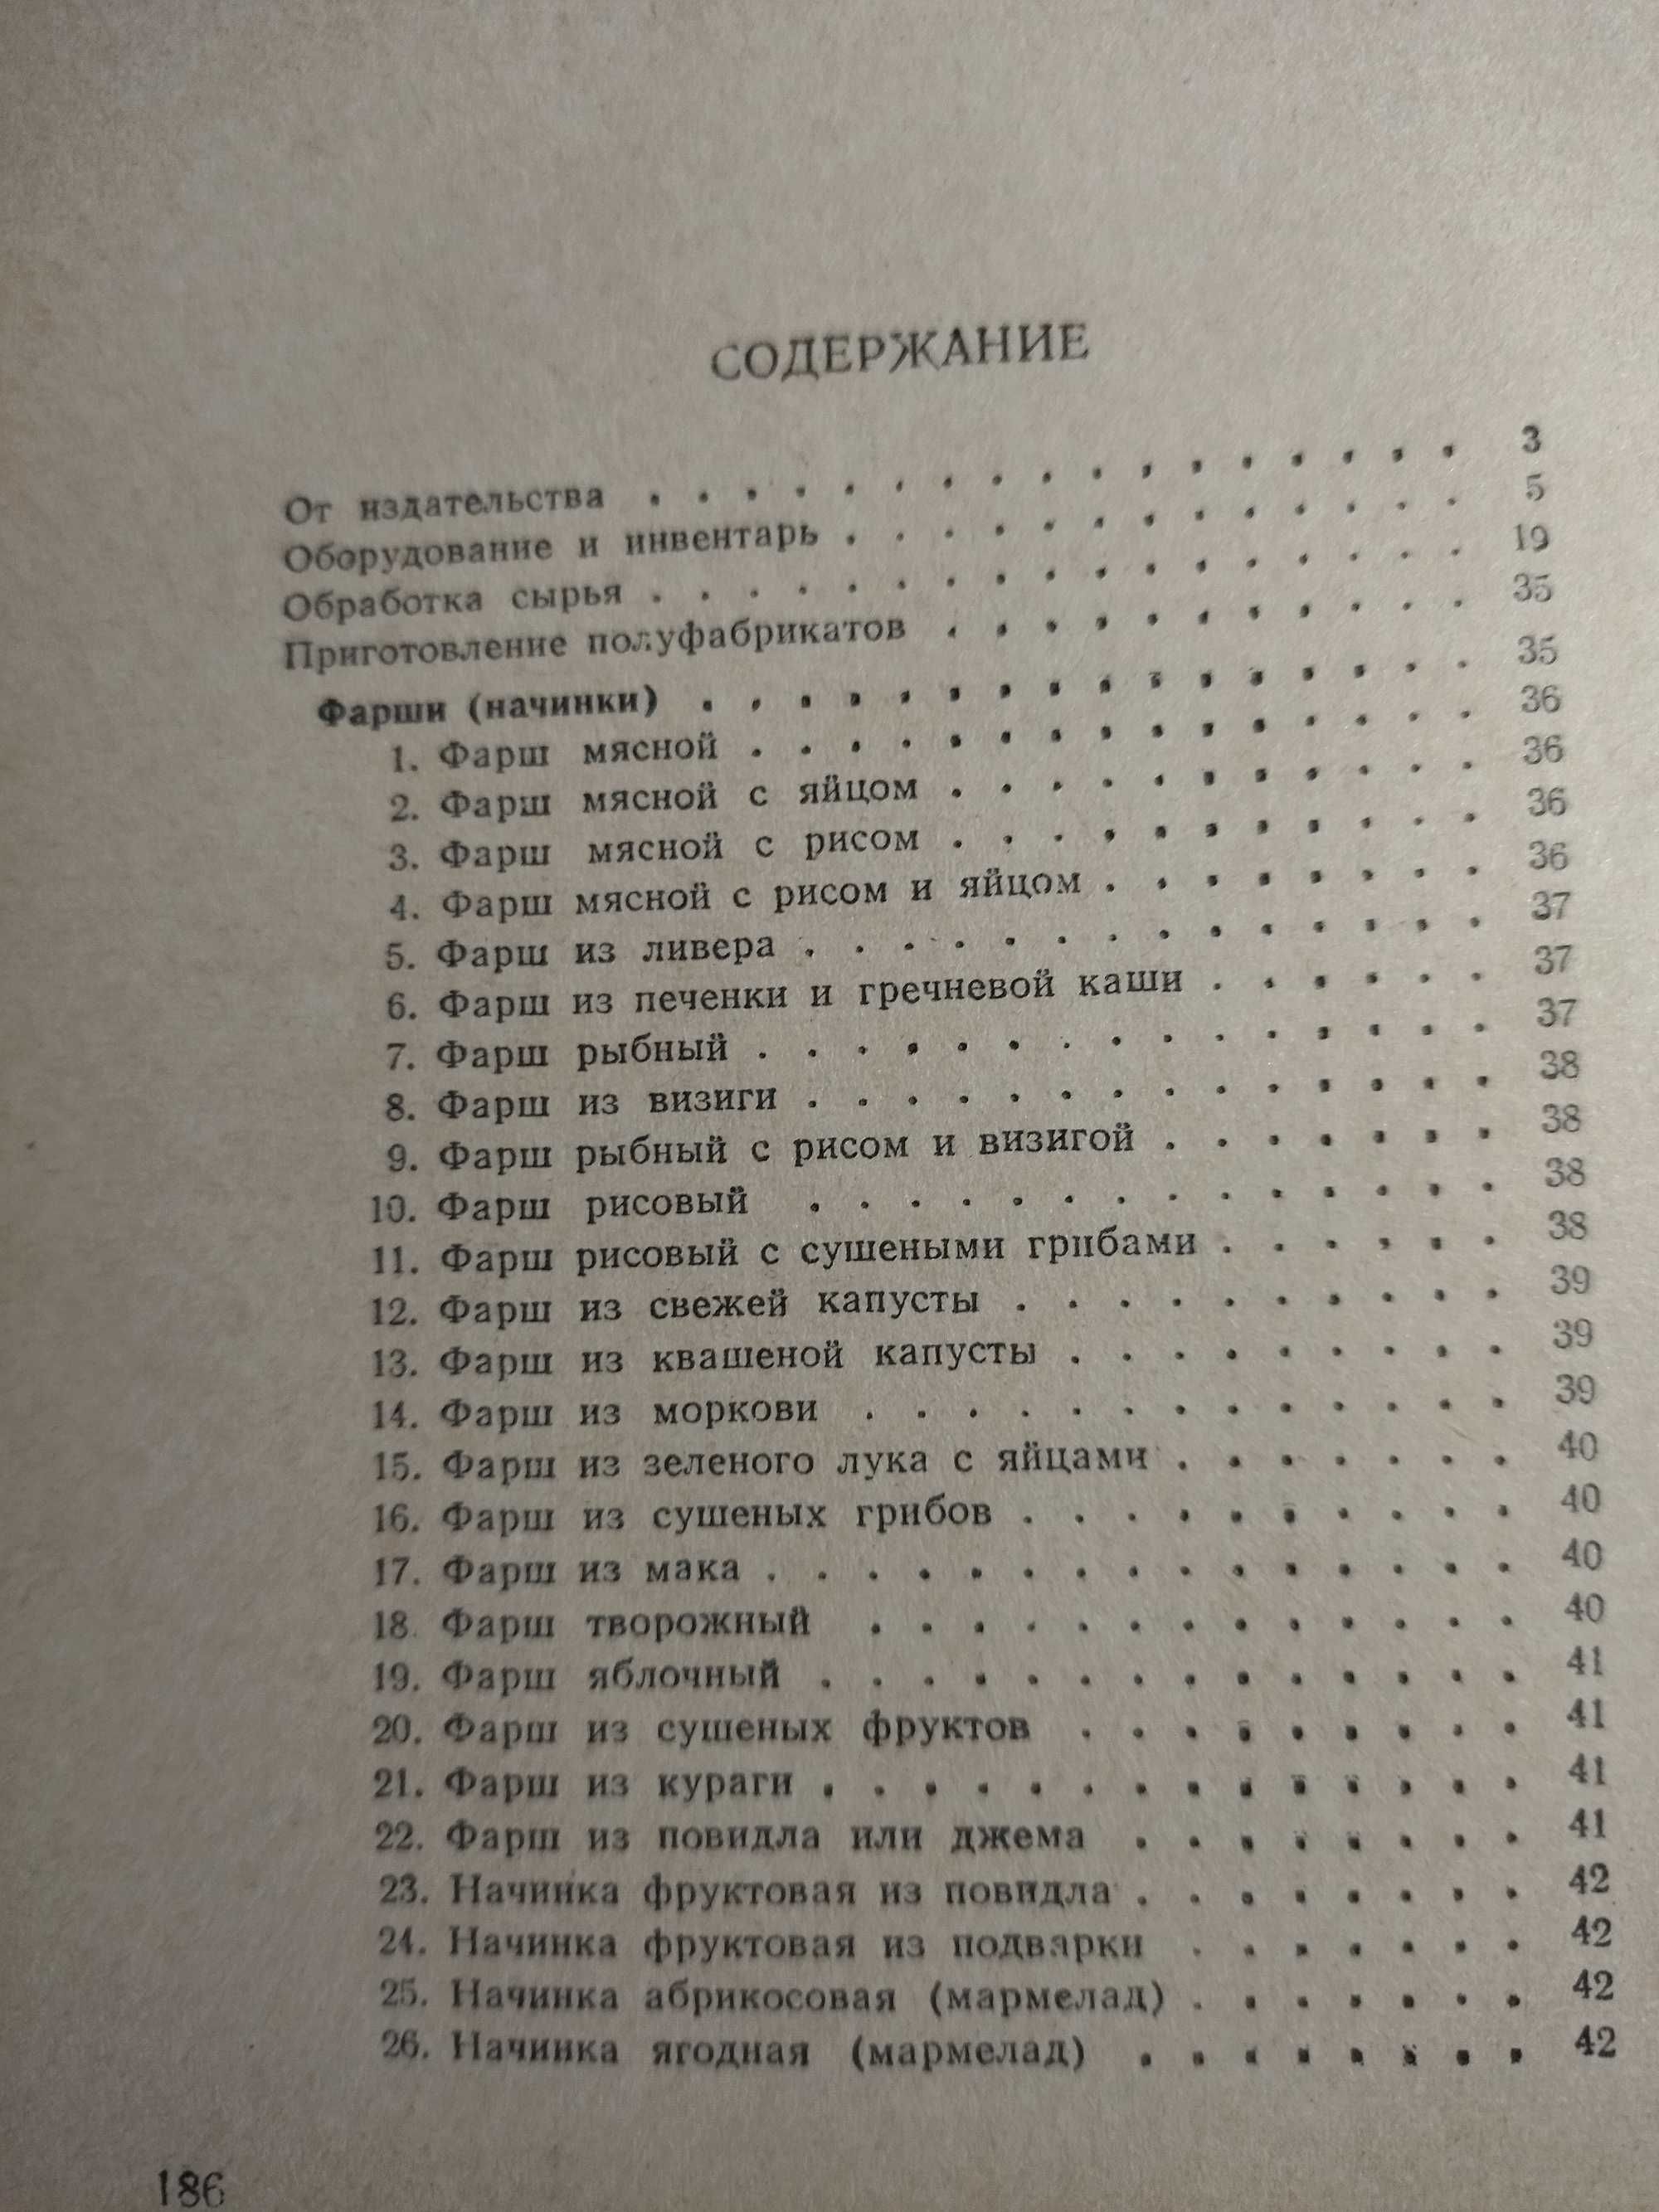 1958 г. Изделия из теста. Р.П. Кенгис